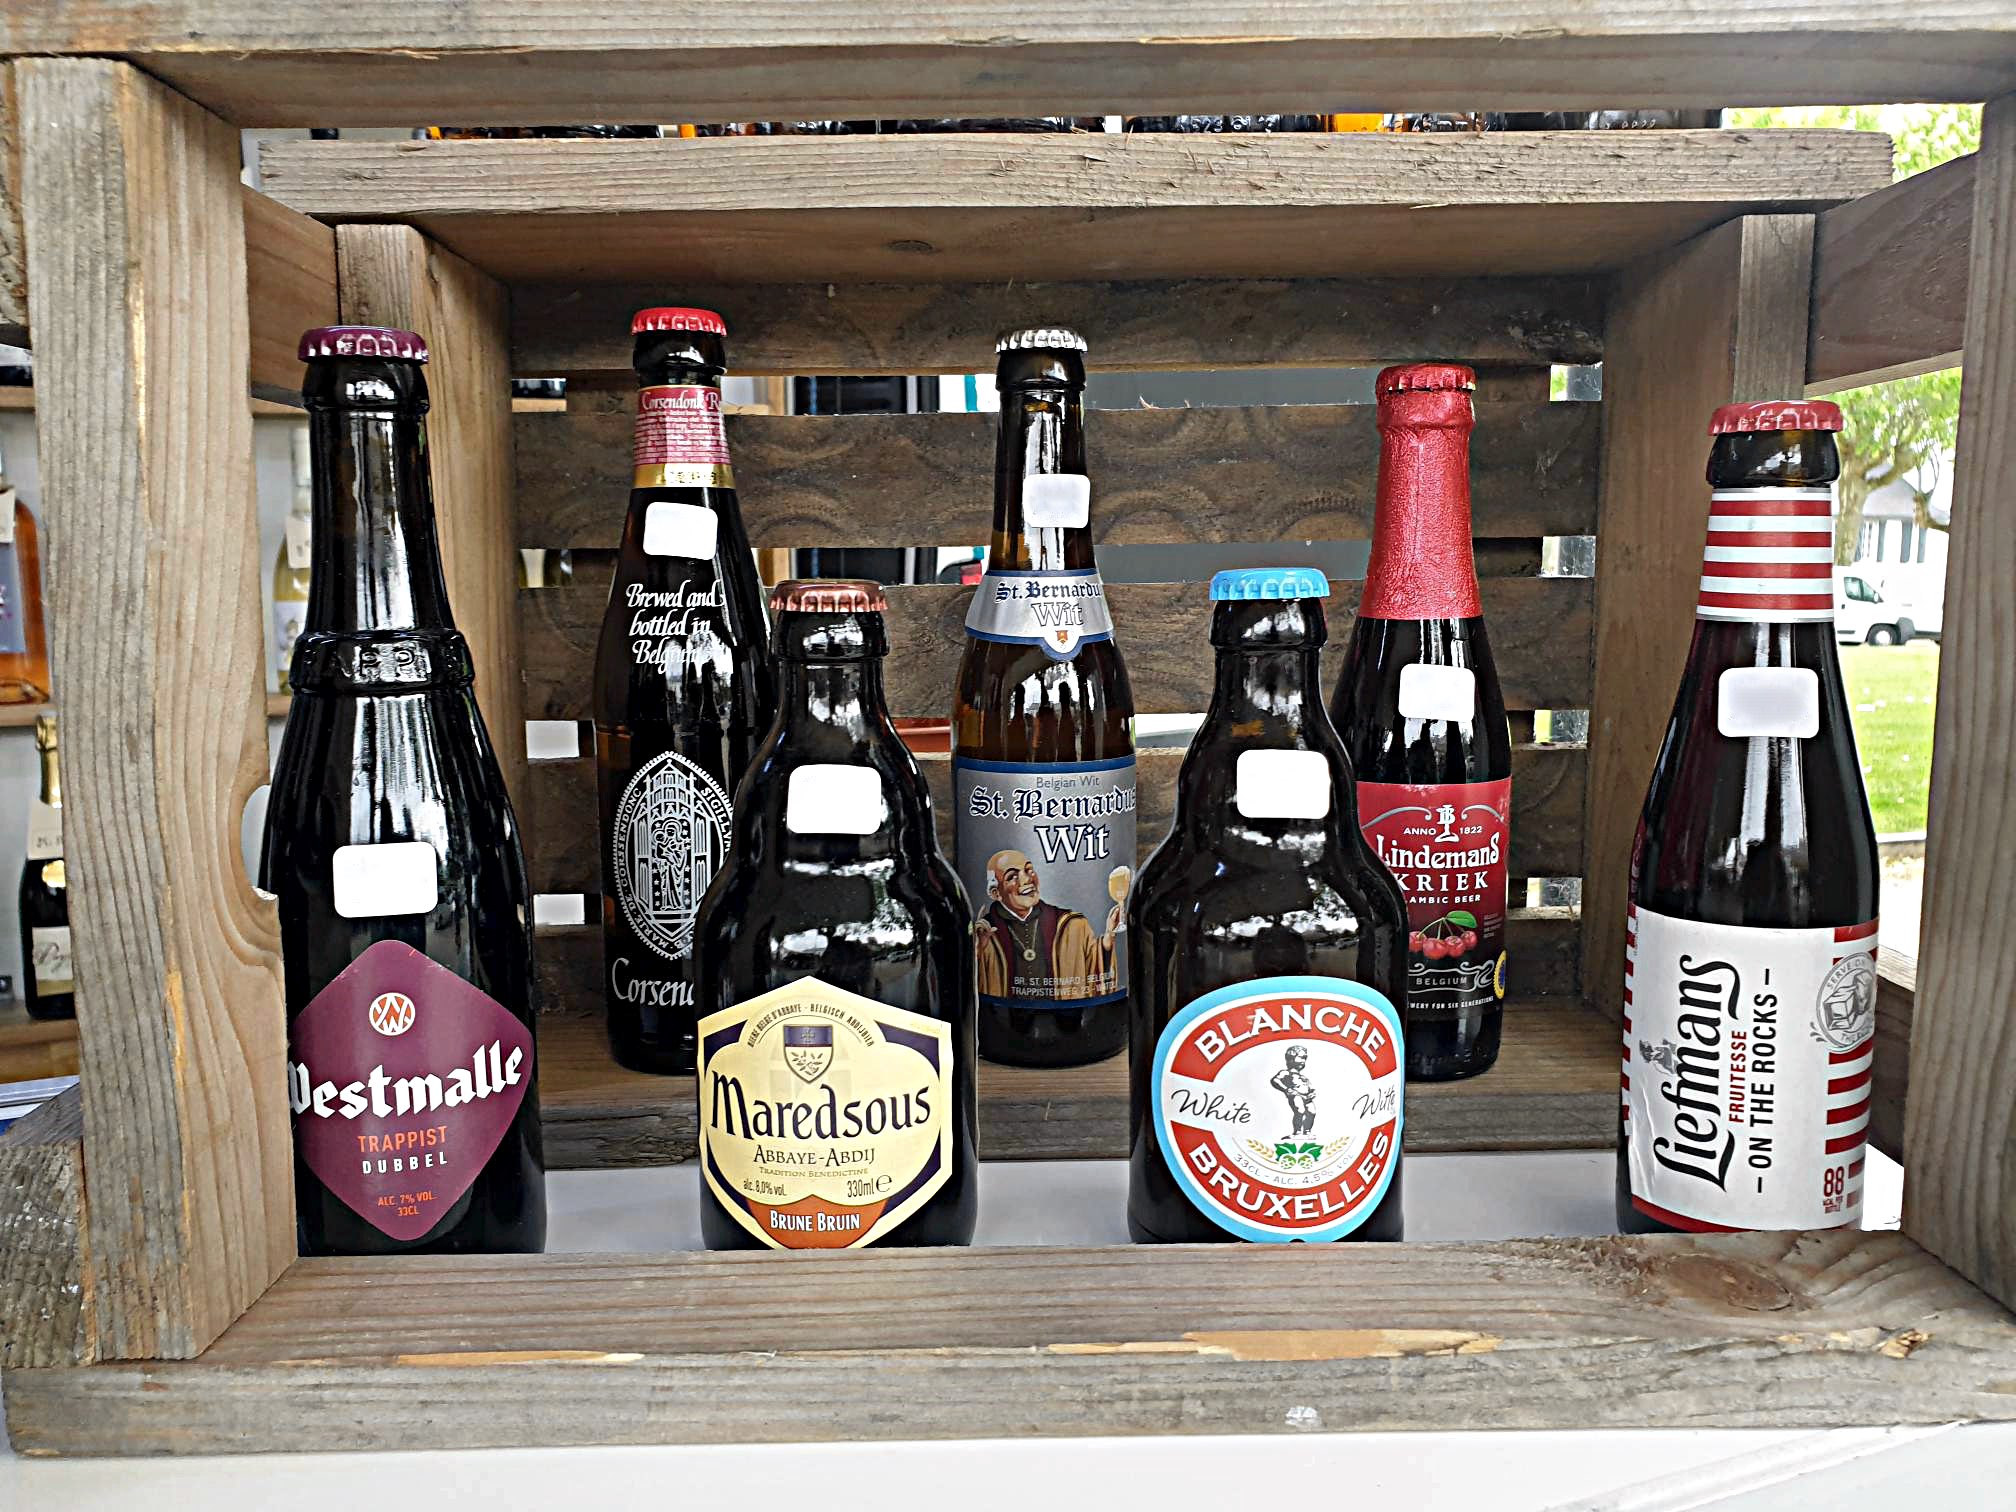 Assortiments de bieres: à offrir en coffret cadeau belge